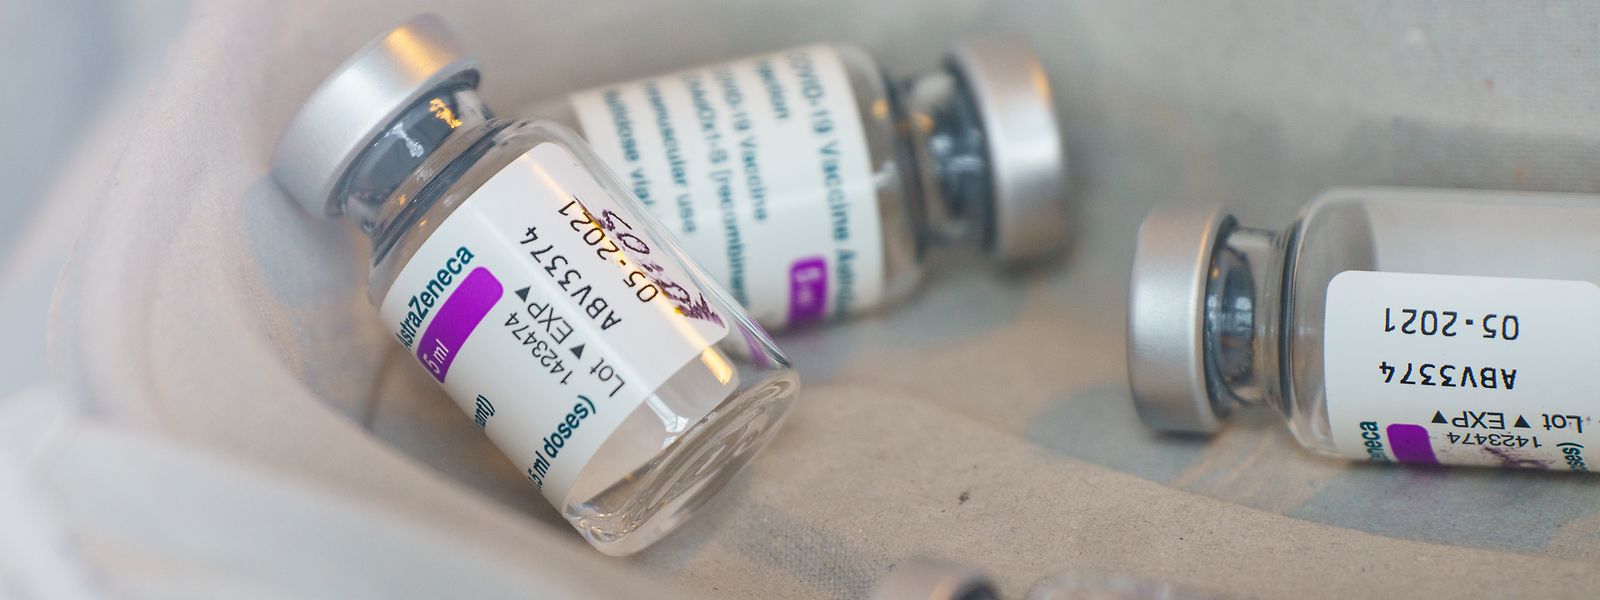 Selon les experts, les analyses effectuées «sont compatibles avec la thrombocytopénie immunitaire-thrombotique induite par le vaccin contre le covid-19».